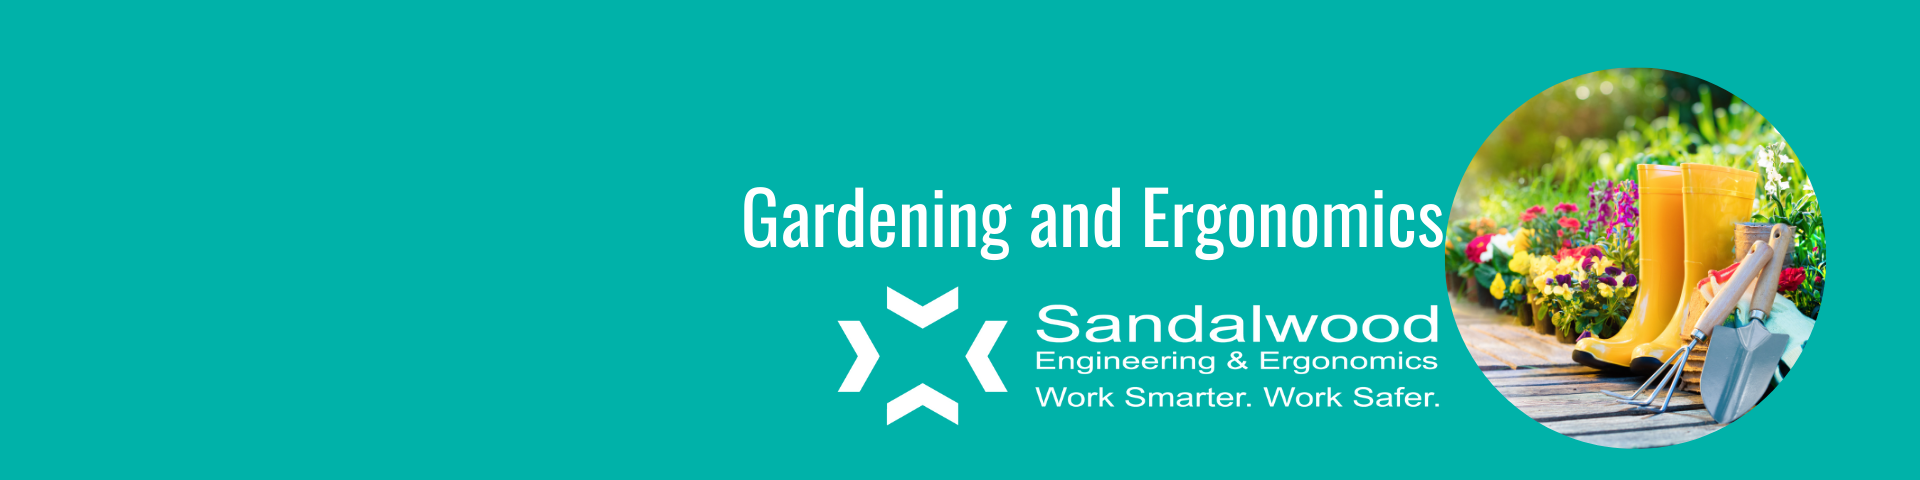 Gardening and ergonomics